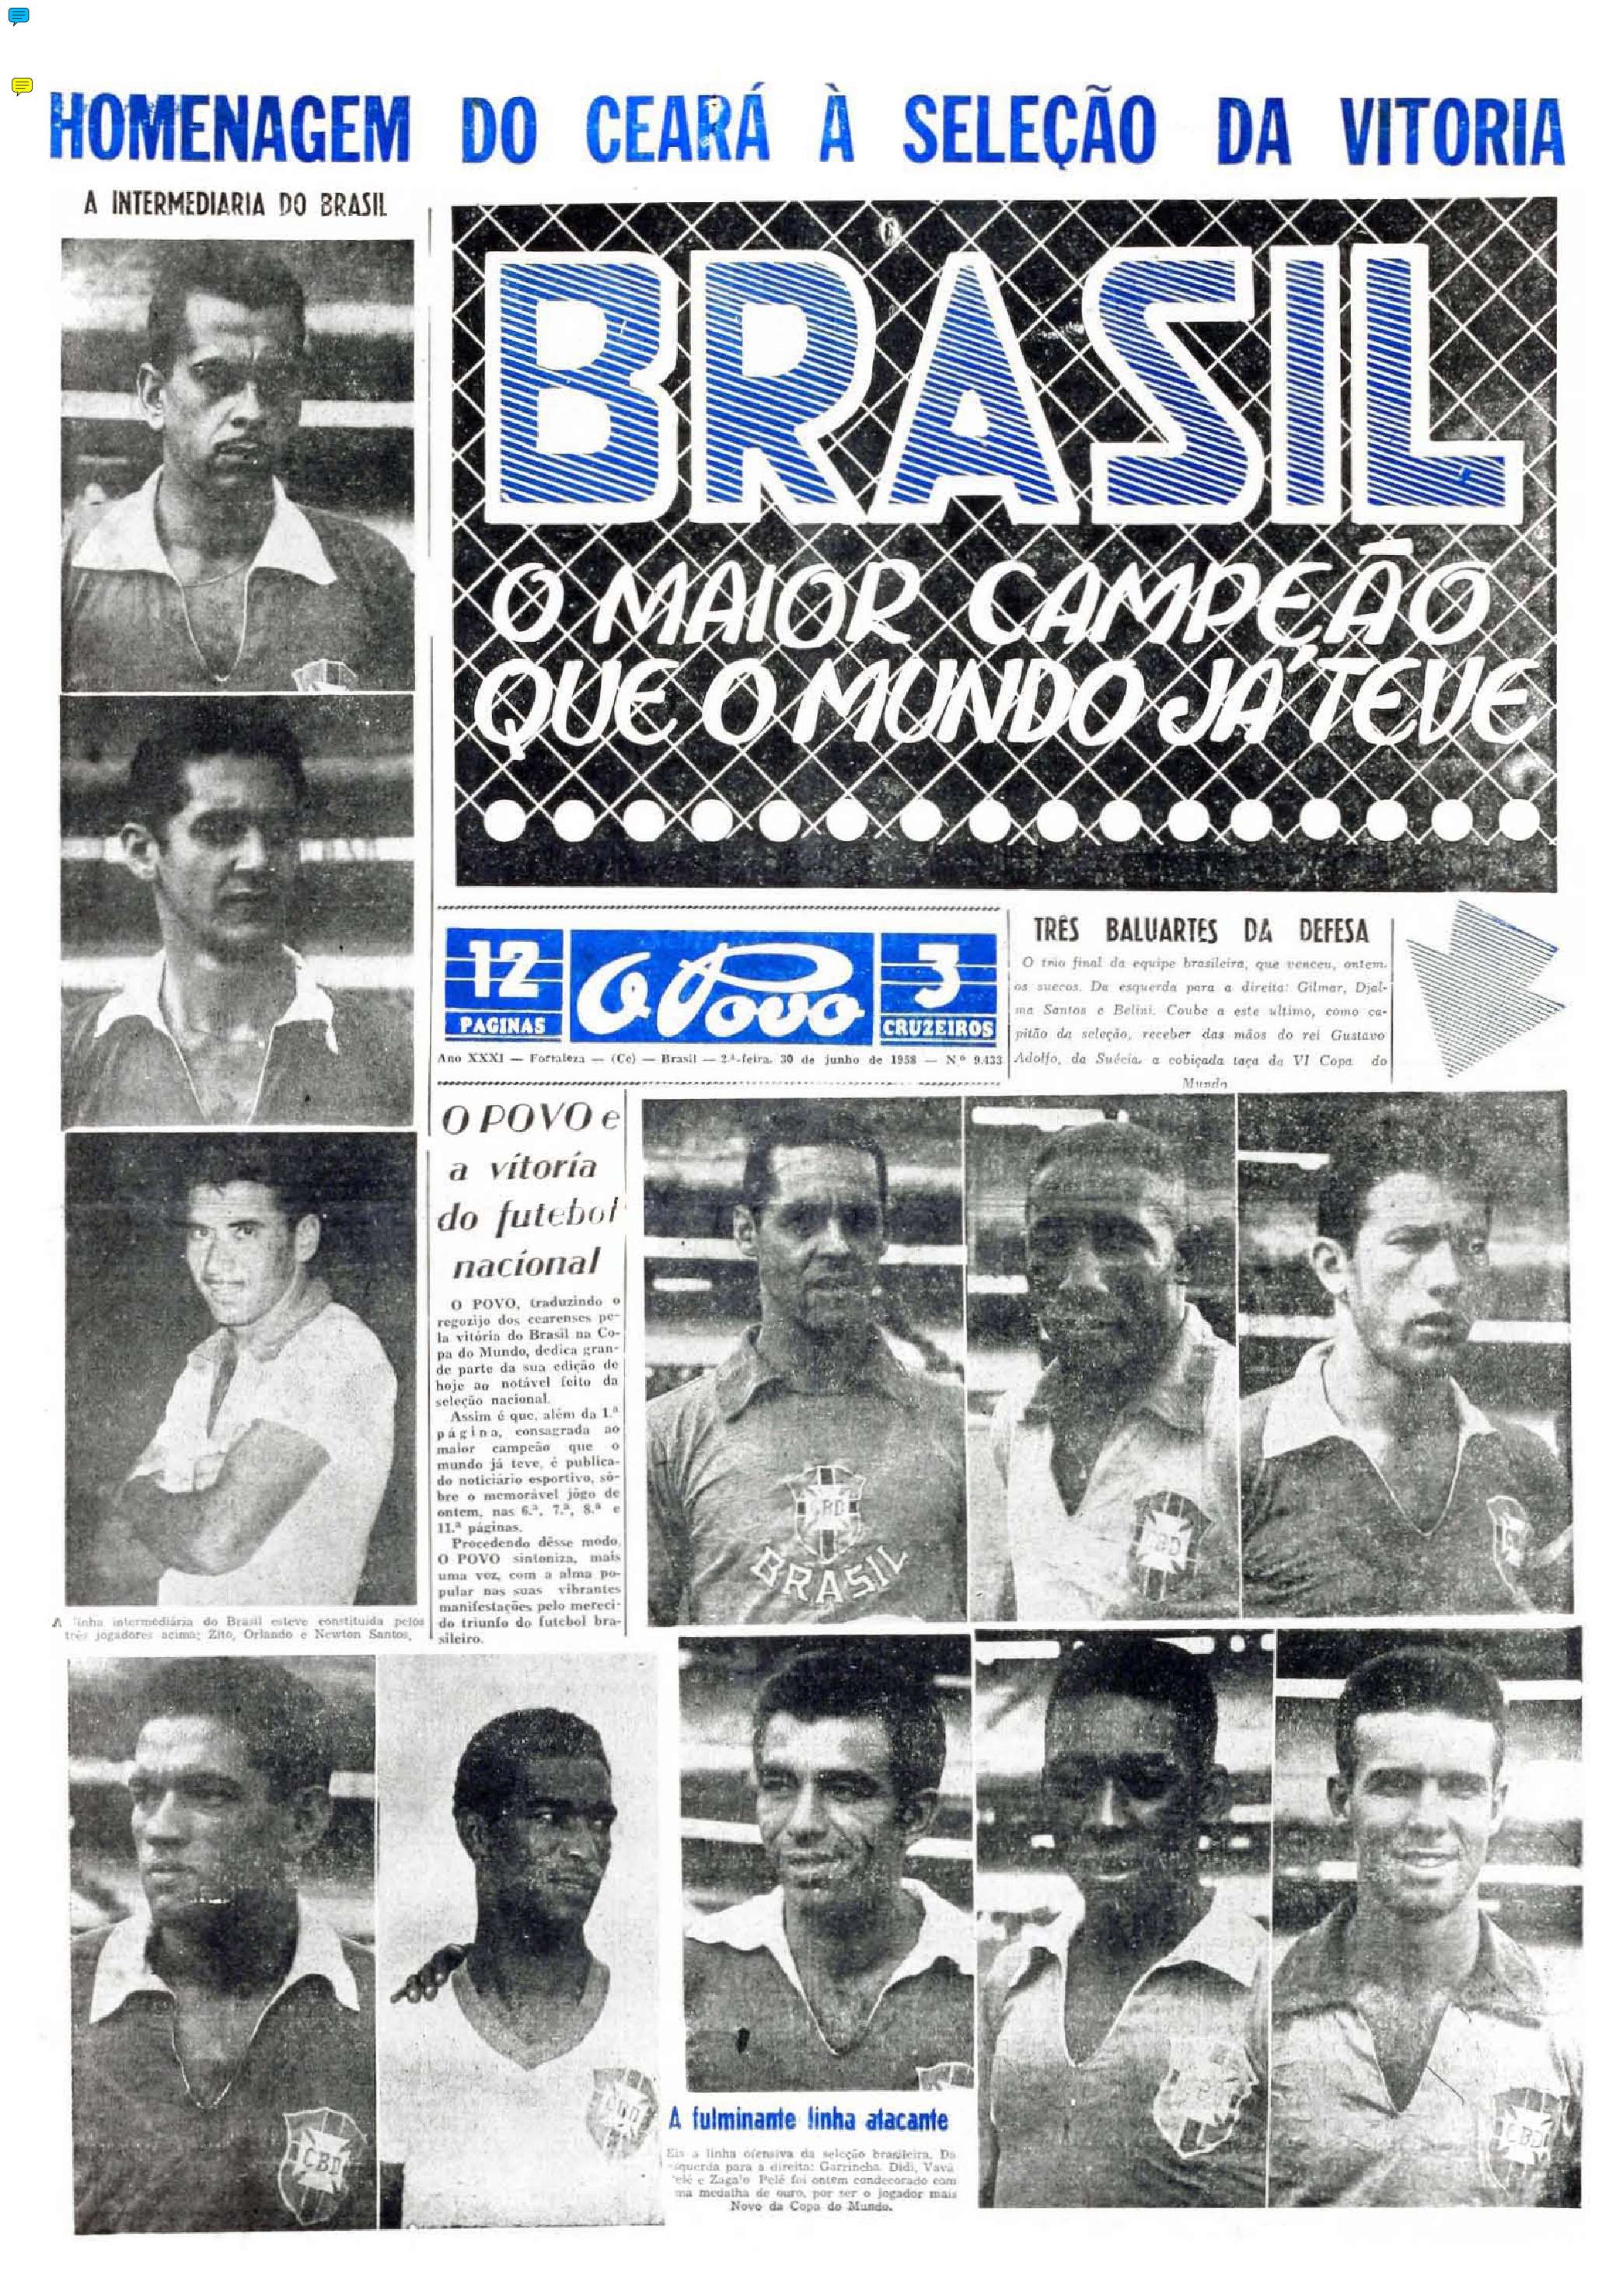 Pelé e mais: os brasileiros com mais títulos de Copa do Mundo